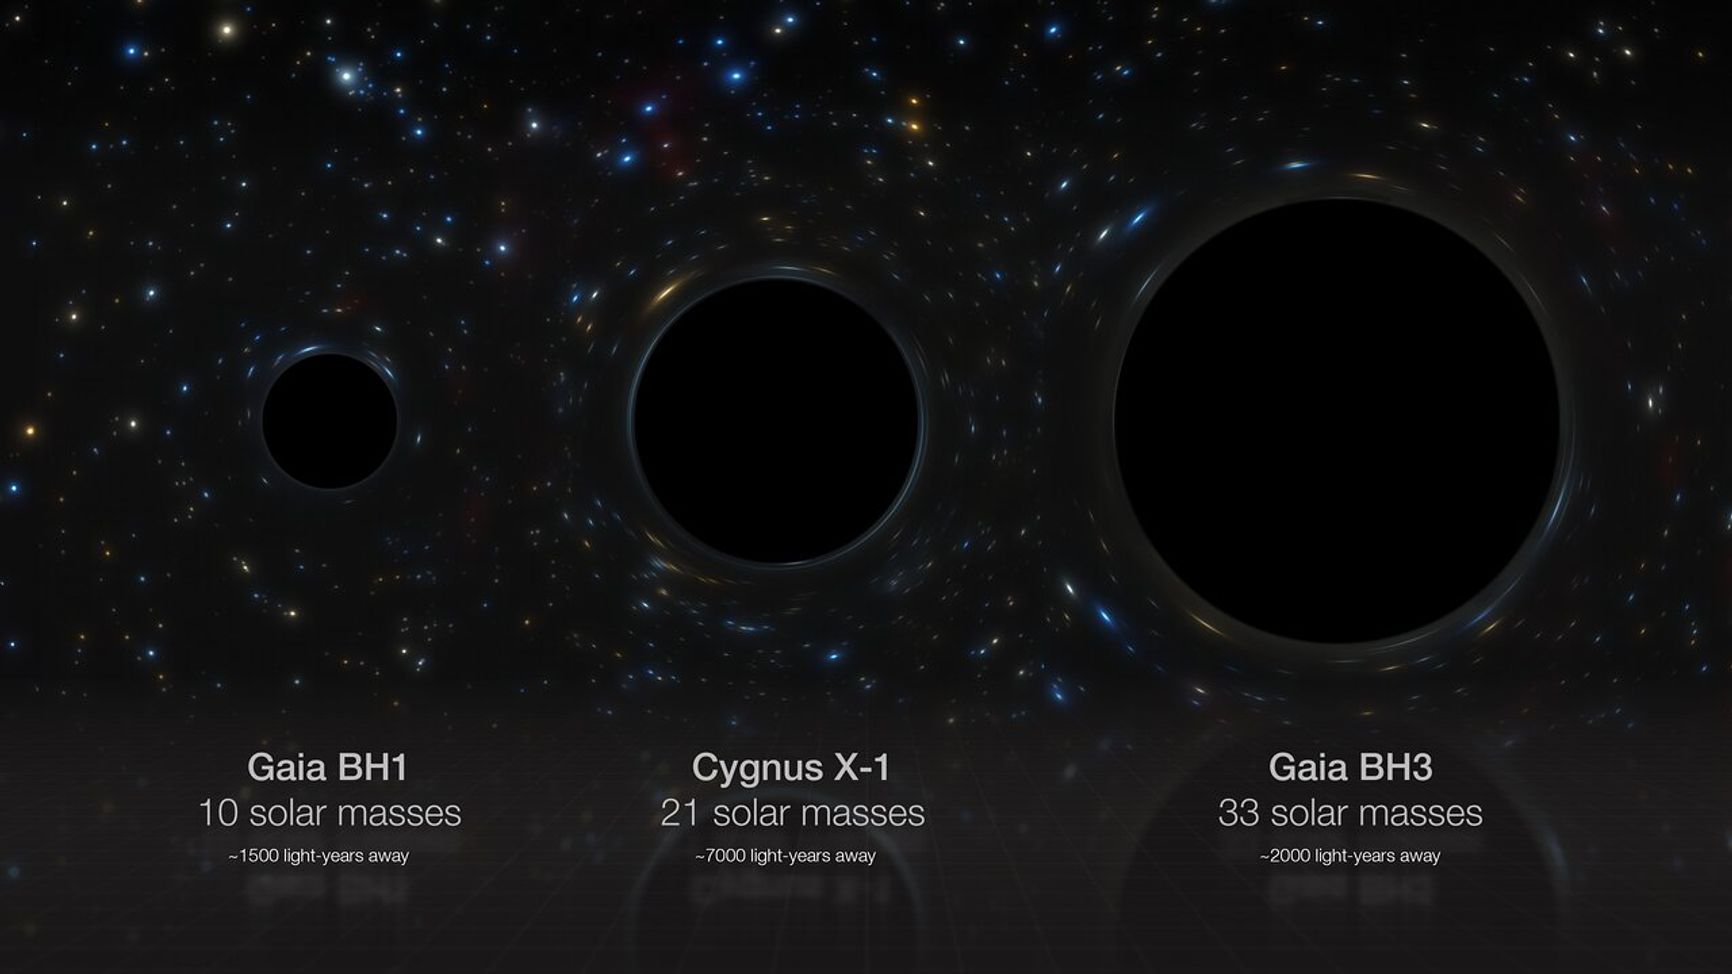 Gaia BH3 — самая массивная звездная черная дыра, обнаруженная на сегодняшний день в Млечном Пути. На изображении художника радиусы черных дыр прямо пропорциональны их массам, но сами черные дыры непосредственно не изображены